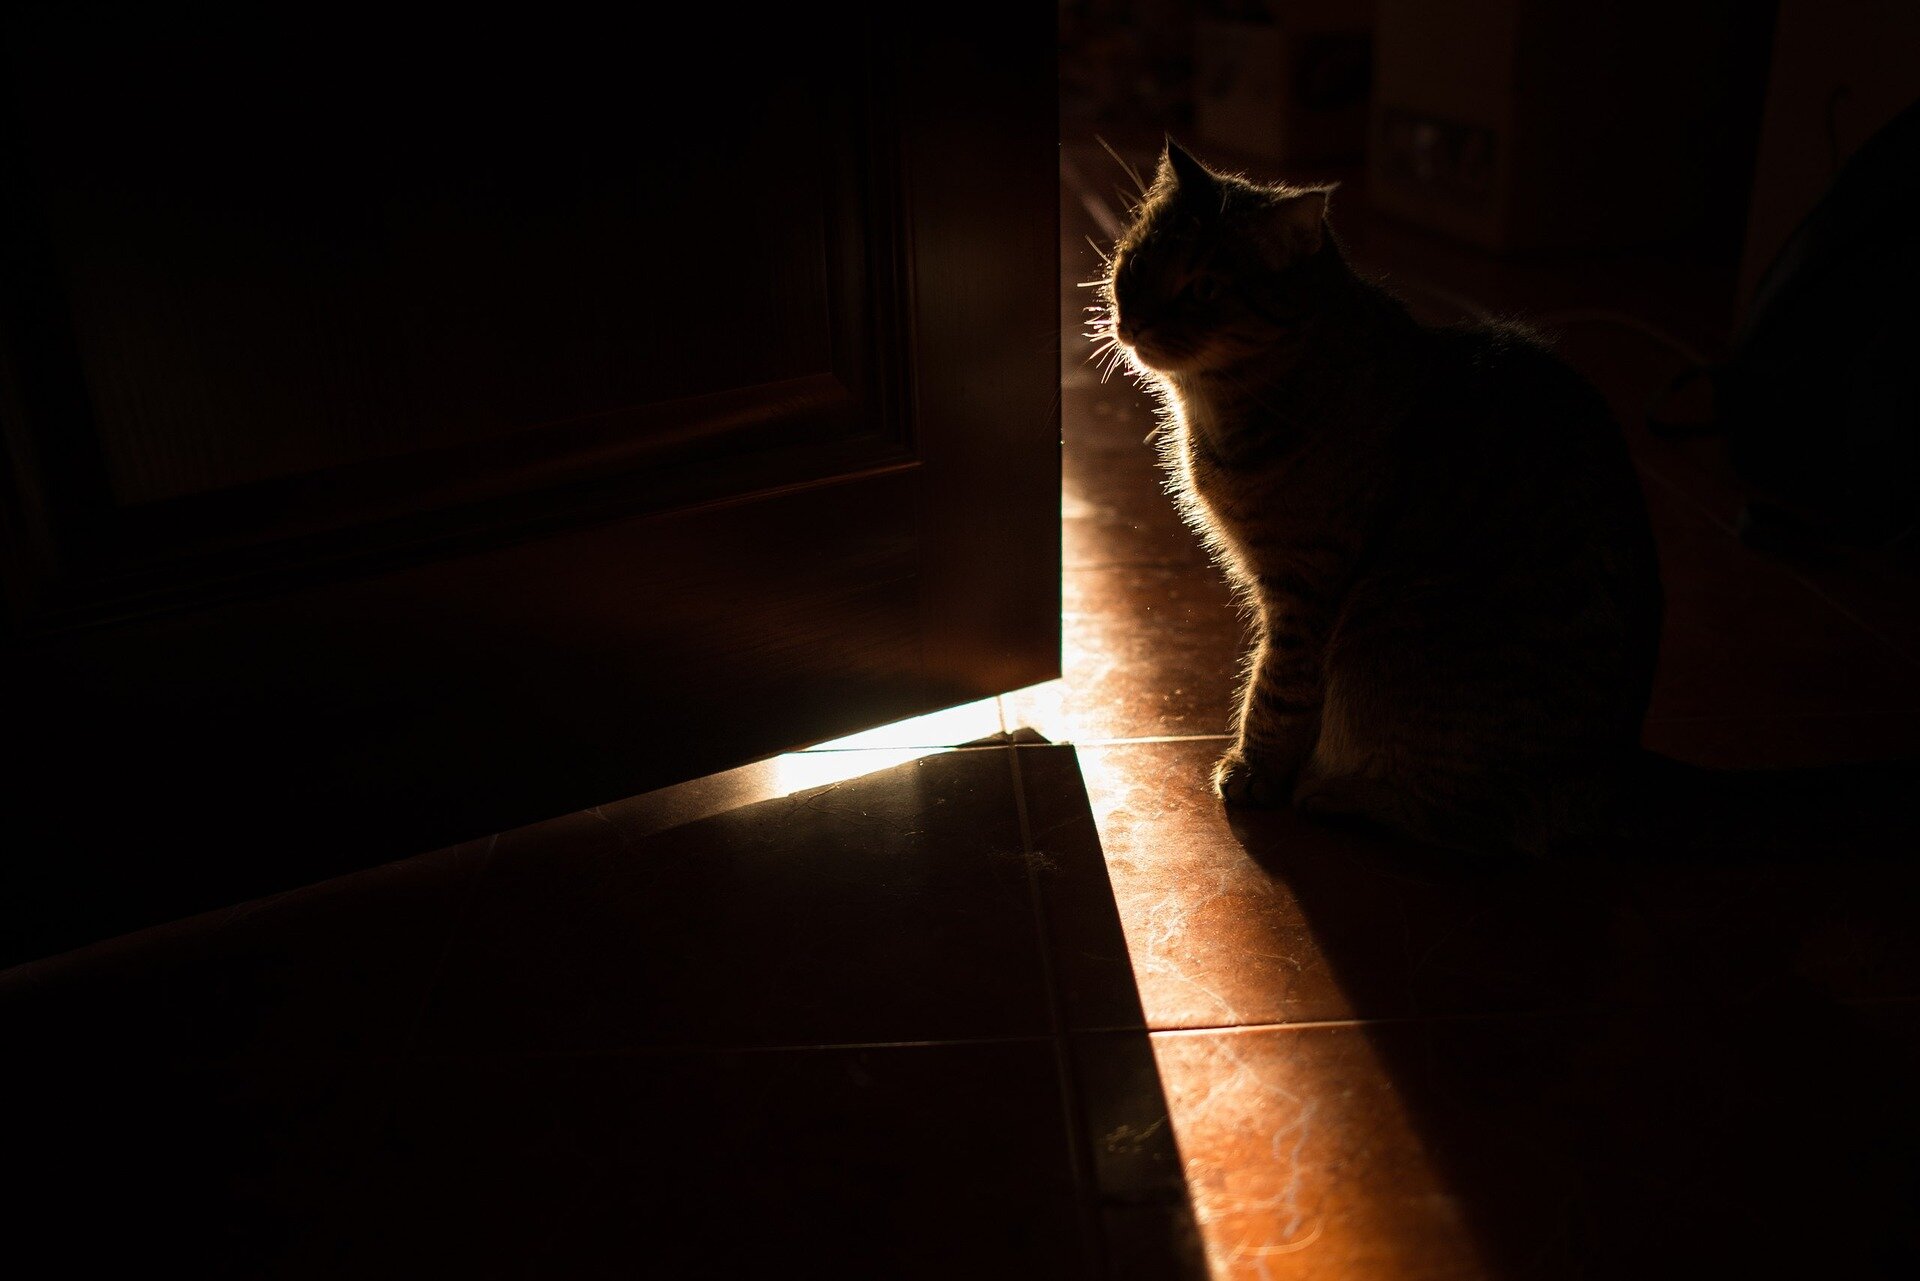 kapı kenarında karanlıkta oturan kedi